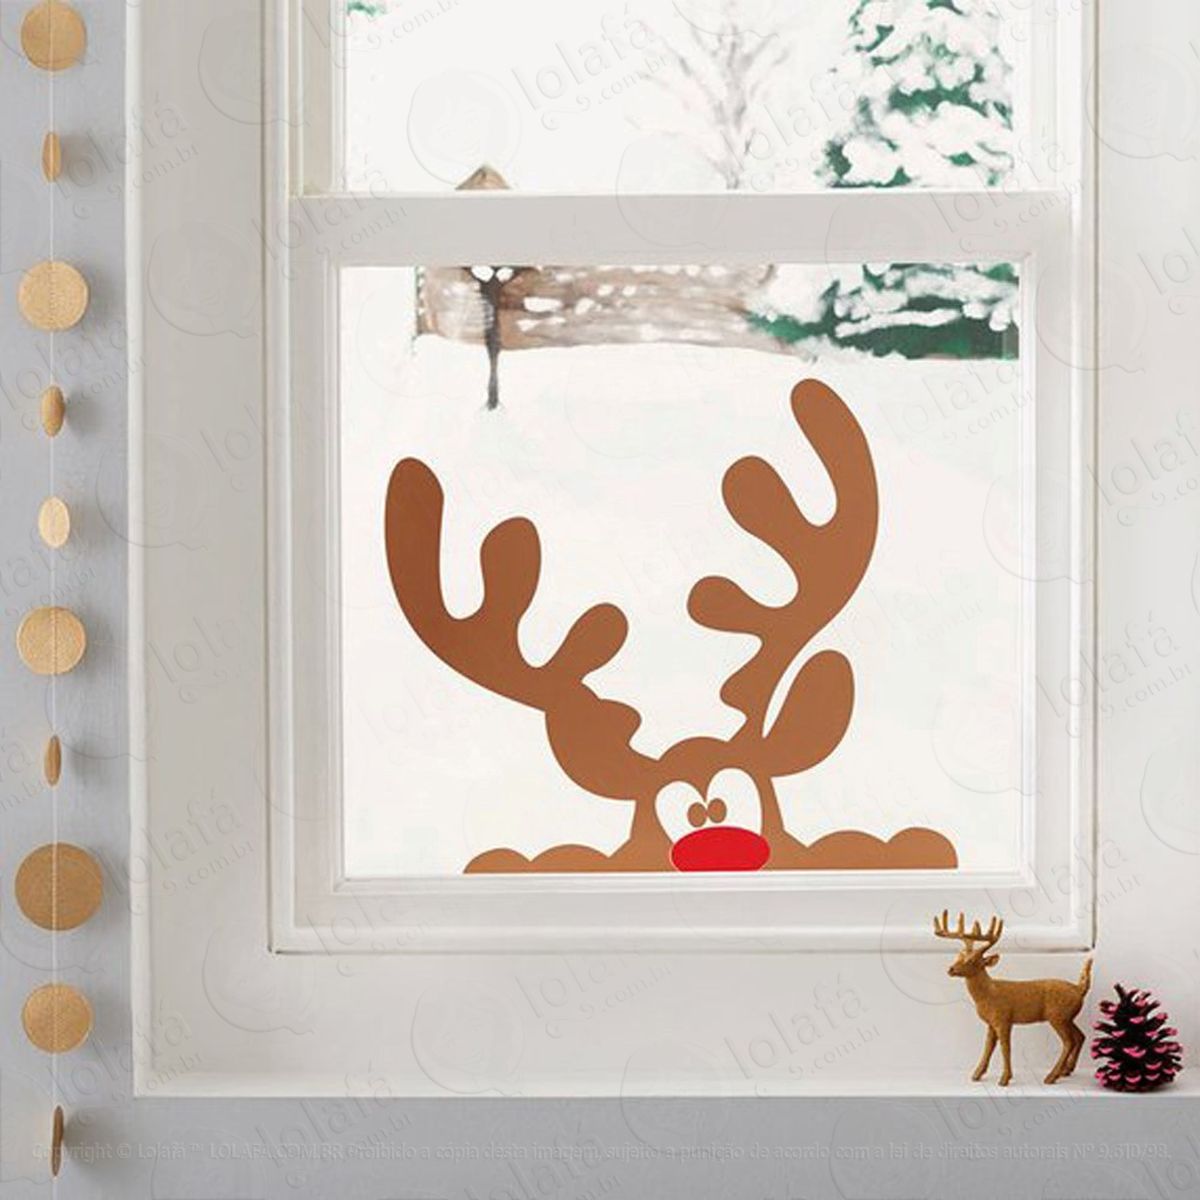 rena adesivo de natal para vitrine, parede, porta de vidro - decoração natalina mod:211